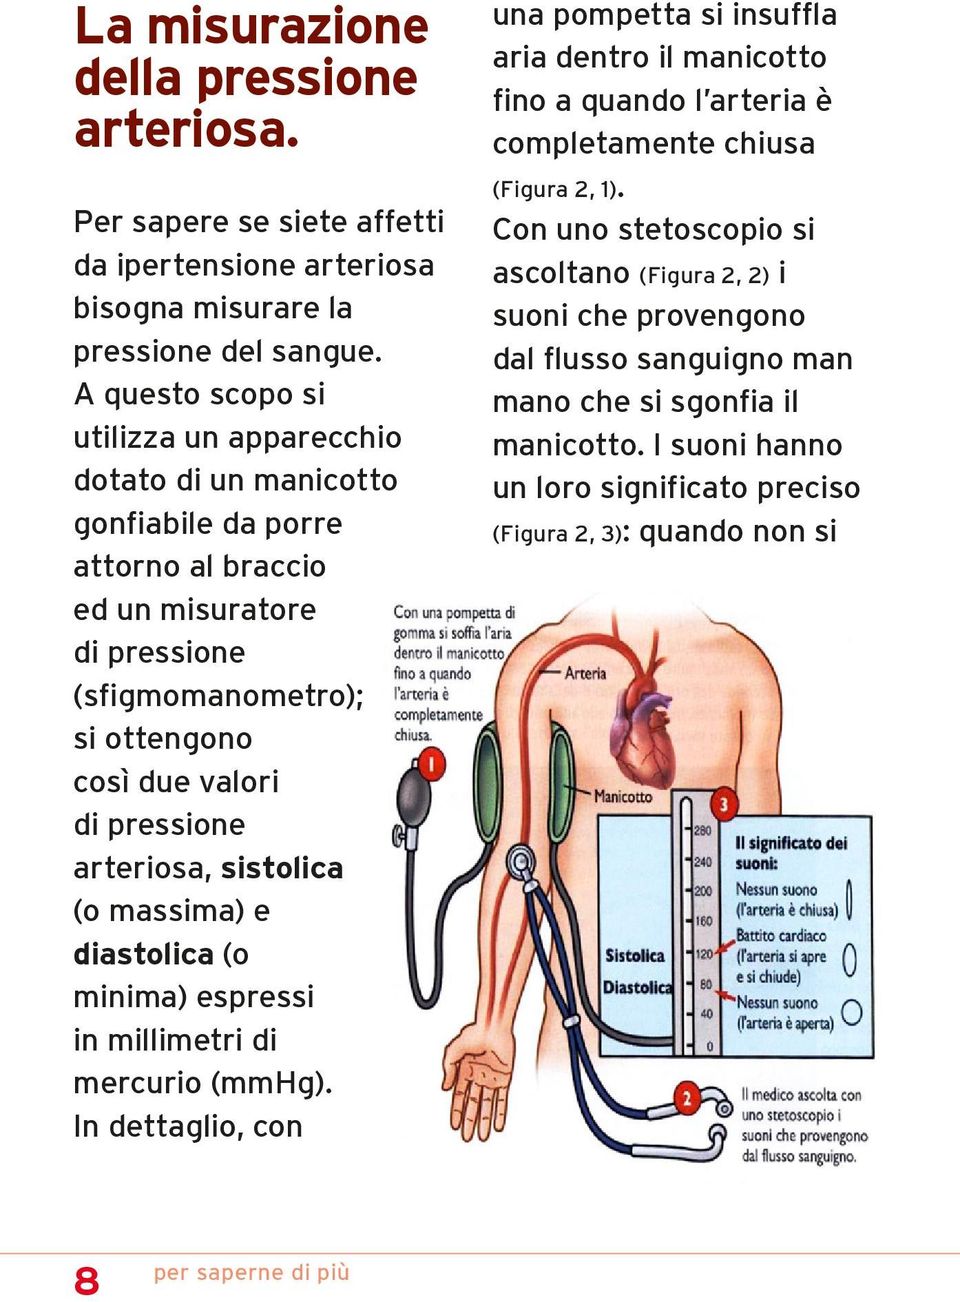 arteriosa, sistolica (o massima) e diastolica (o minima) espressi in millimetri di mercurio (mmhg).